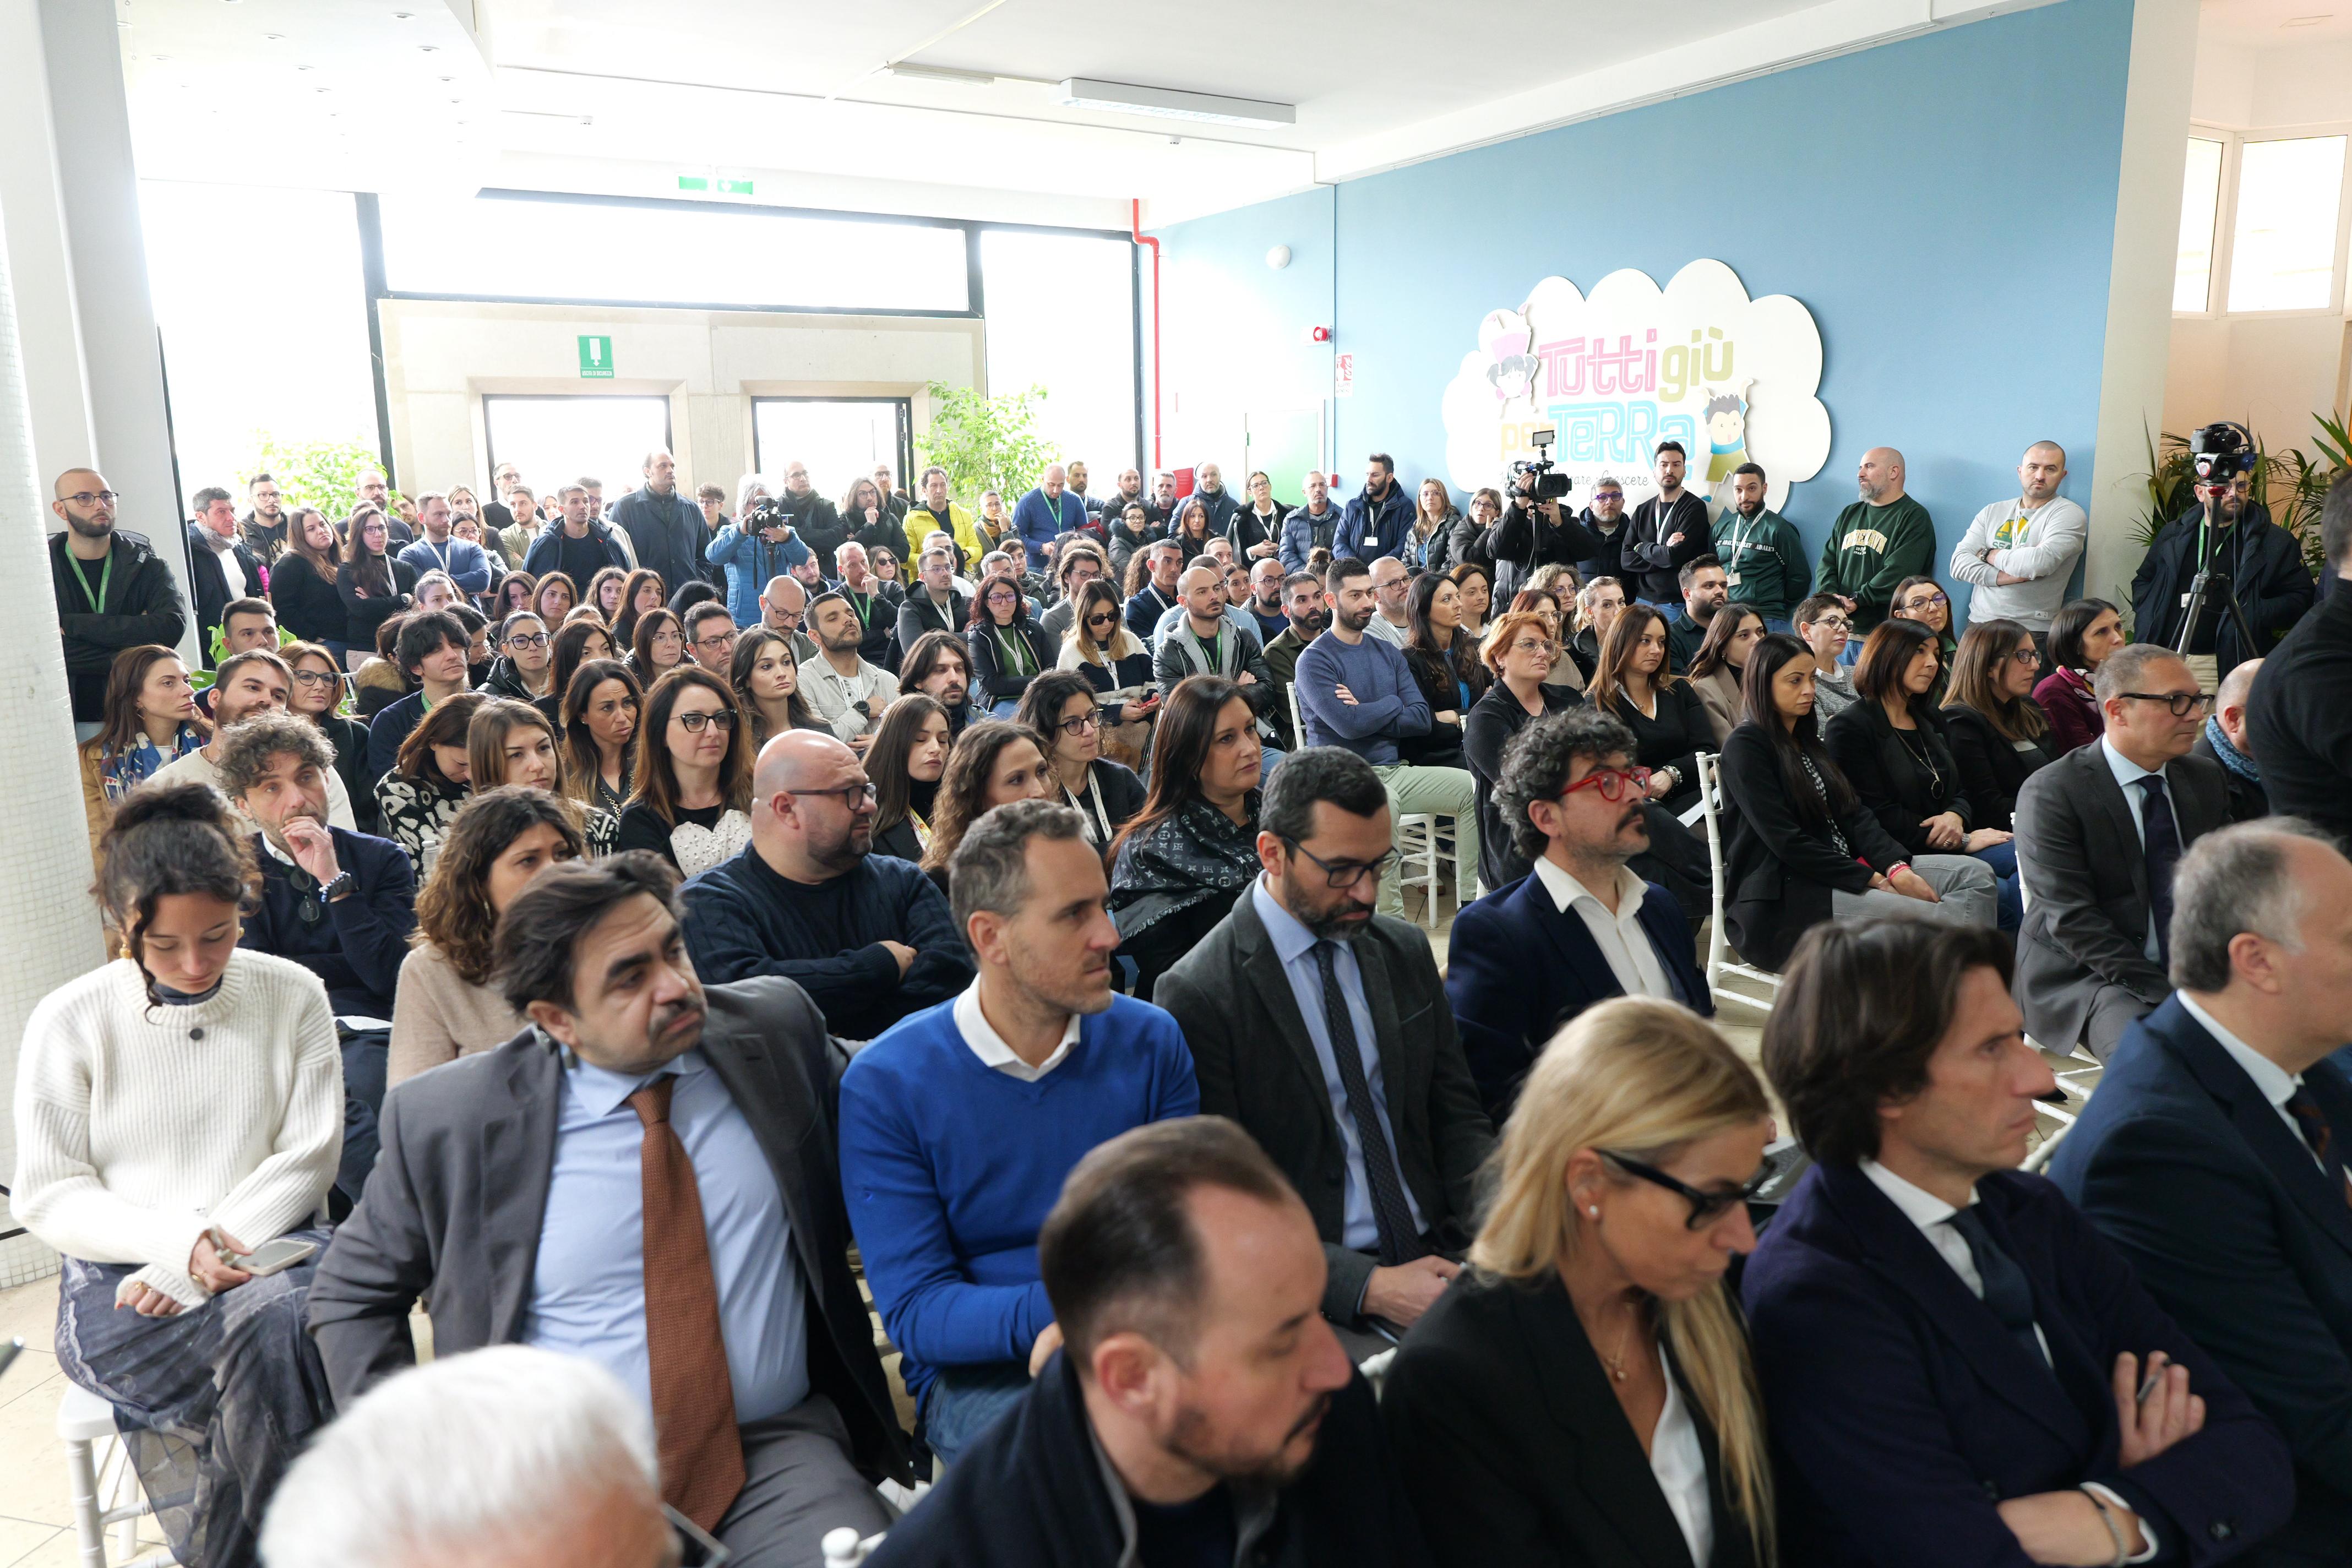 Galleria La tecnologia salva i posti di lavoro: Network Contacts e Regione Puglia evitano i 280 licenziamenti - Diapositiva 6 di 18